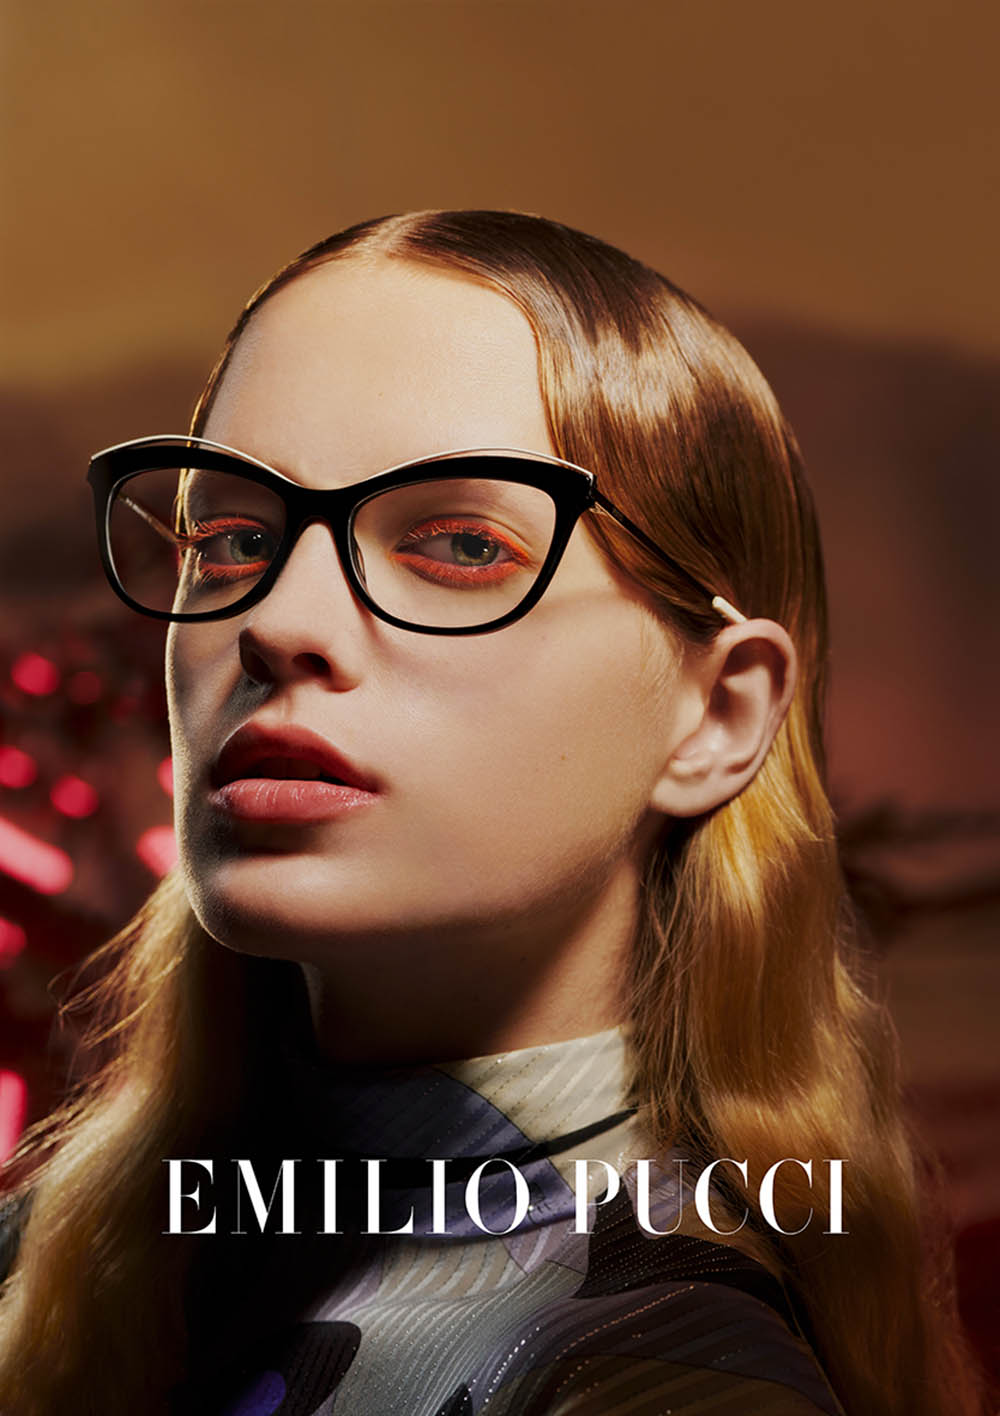 Emilio Pucci Fall Winter 2019 Campaign